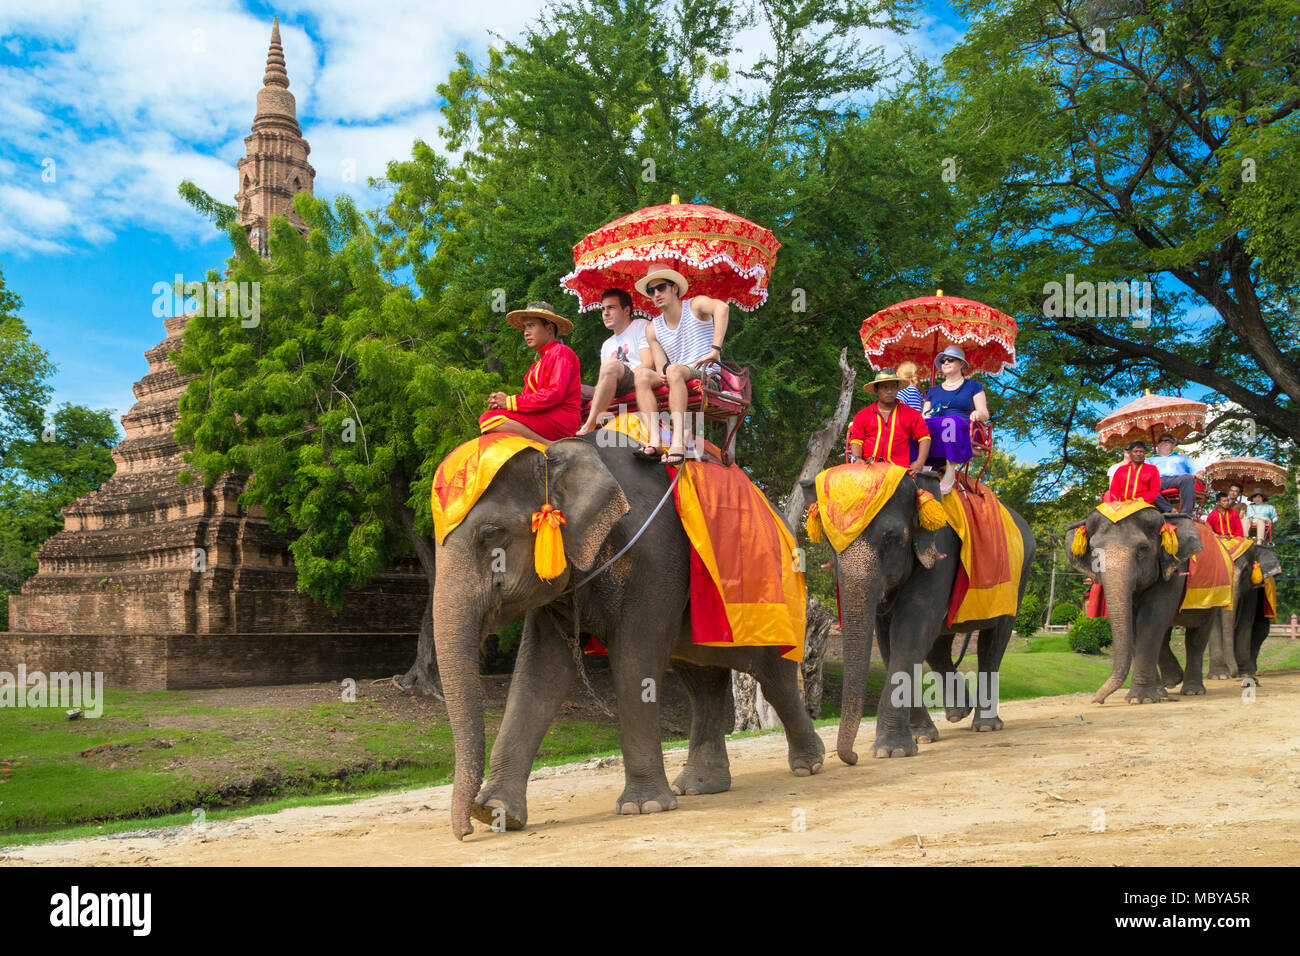 Tourists on elephant tour around Ayutthaya, Thailand Stock Photo